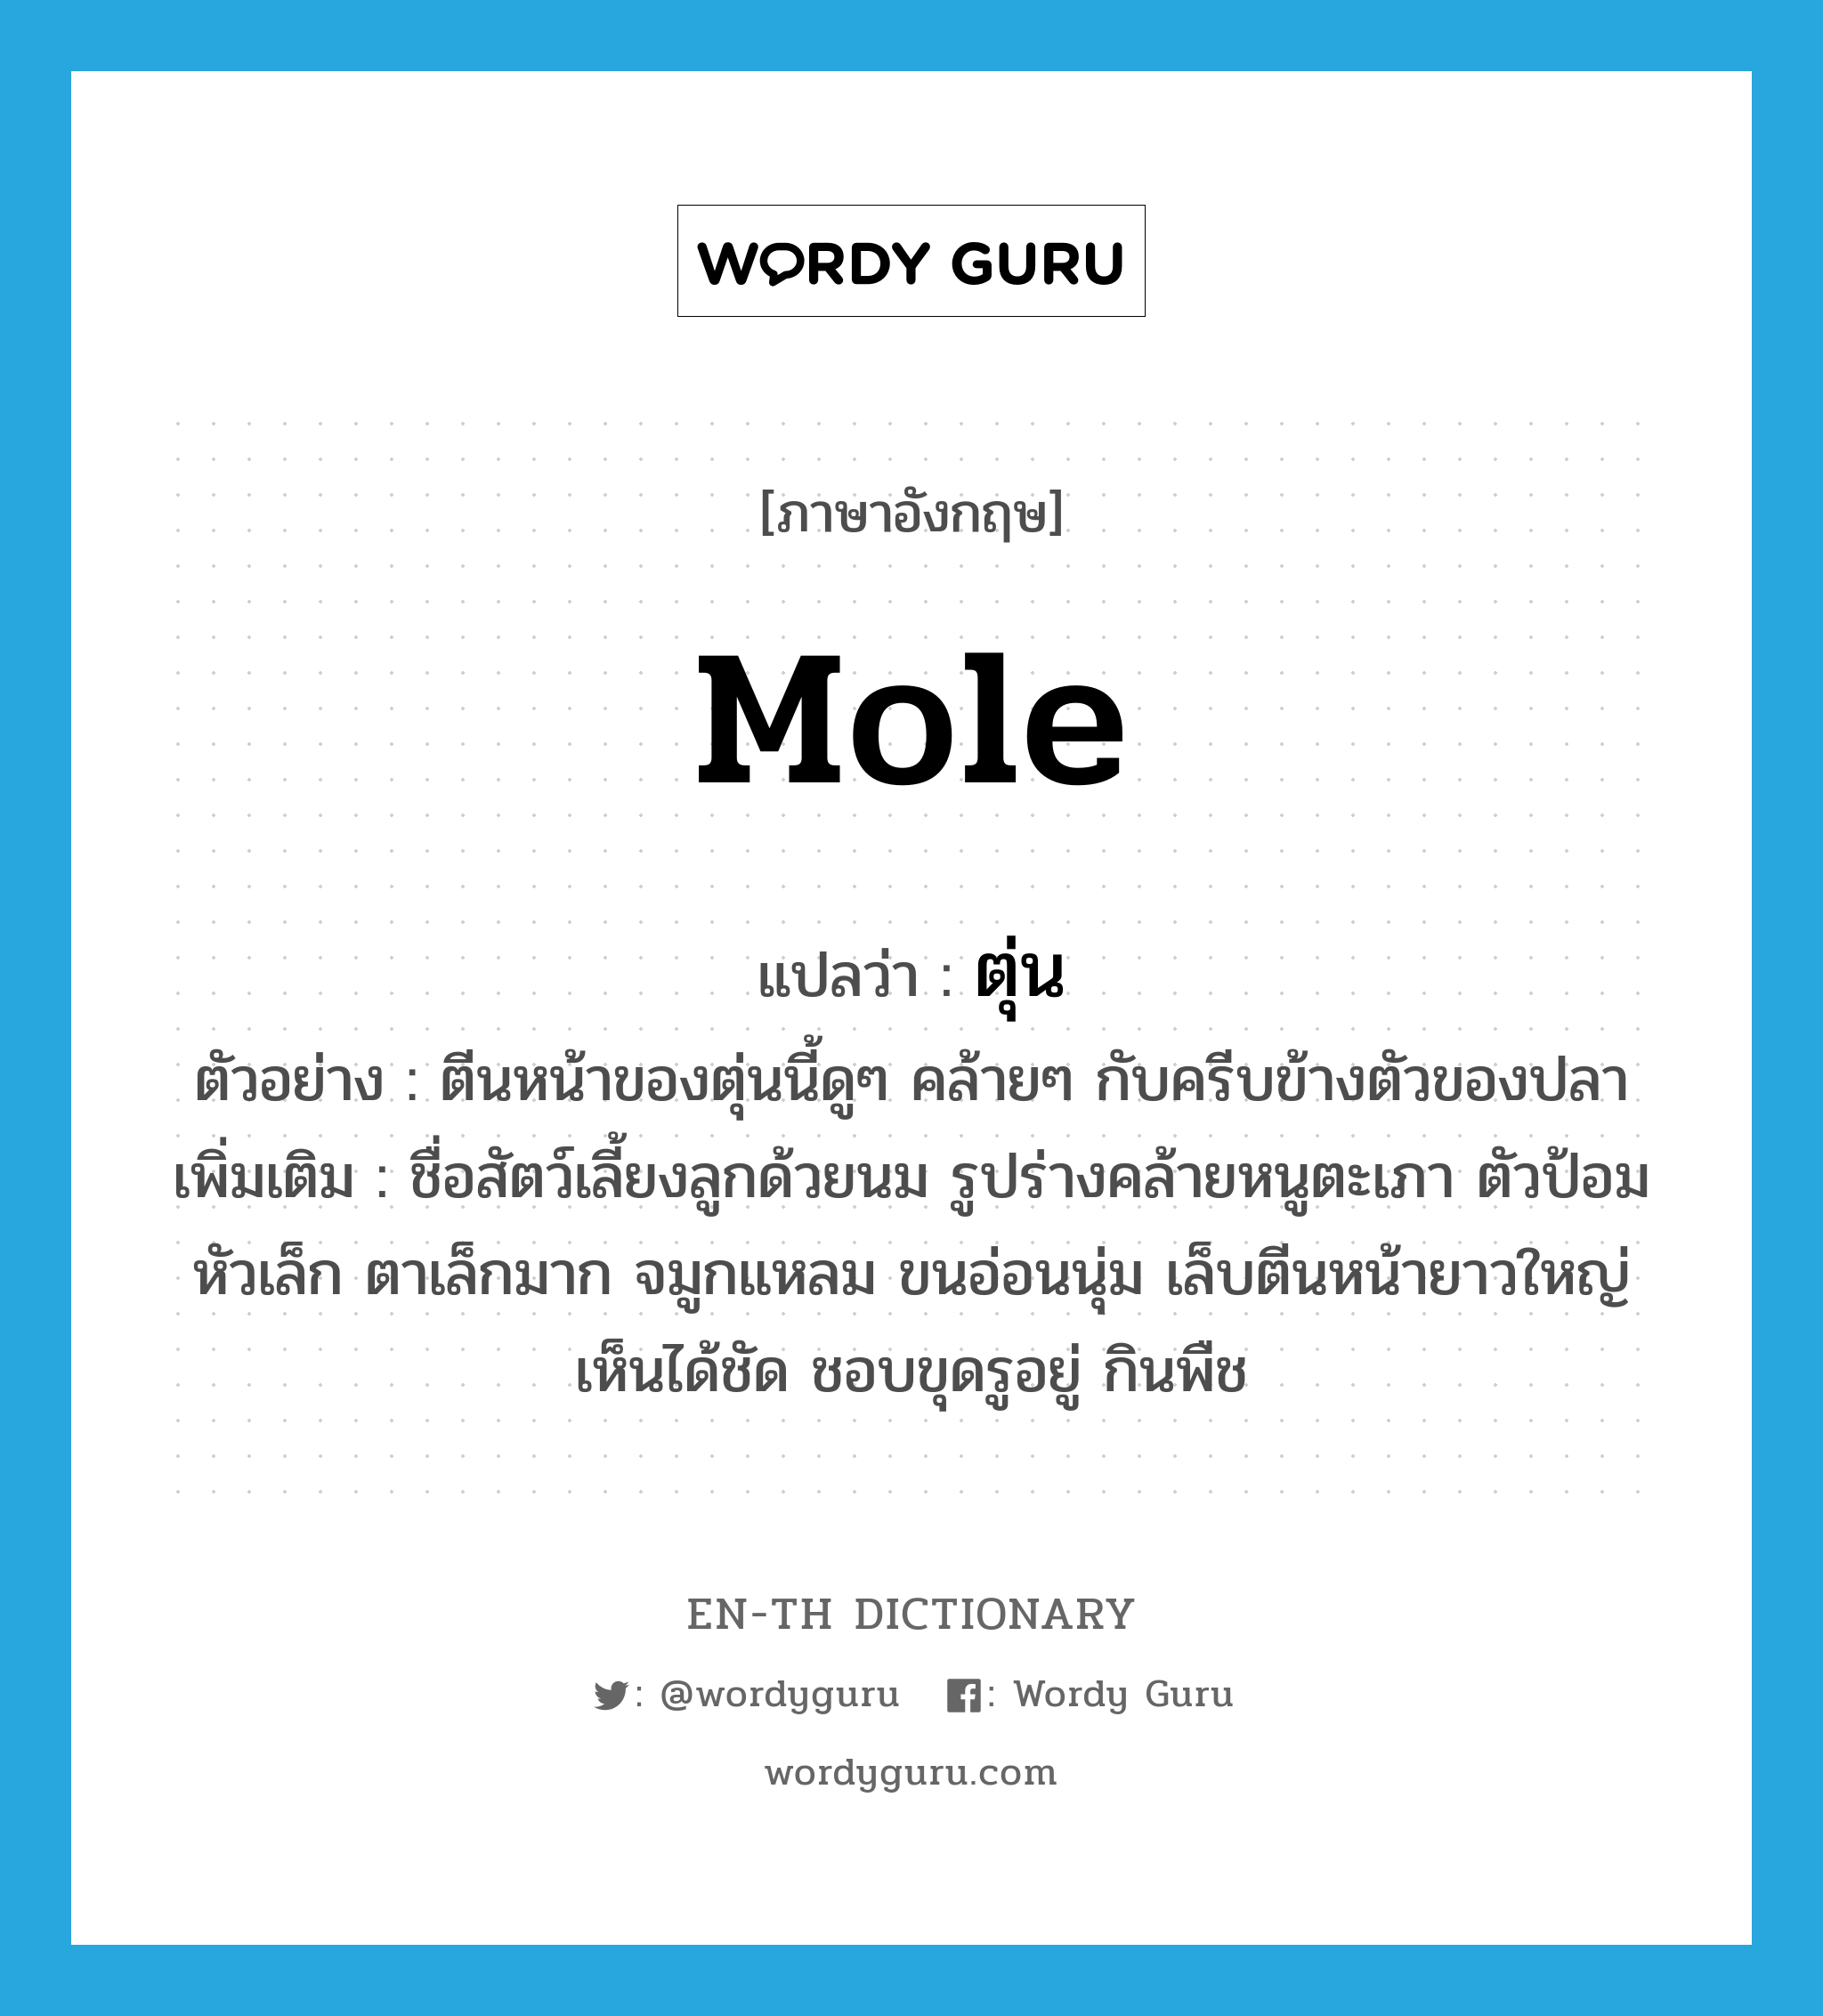 mole แปลว่า?, คำศัพท์ภาษาอังกฤษ mole แปลว่า ตุ่น ประเภท N ตัวอย่าง ตีนหน้าของตุ่นนี้ดูๆ คล้ายๆ กับครีบข้างตัวของปลา เพิ่มเติม ชื่อสัตว์เลี้ยงลูกด้วยนม รูปร่างคล้ายหนูตะเภา ตัวป้อม หัวเล็ก ตาเล็กมาก จมูกแหลม ขนอ่อนนุ่ม เล็บตีนหน้ายาวใหญ่เห็นได้ชัด ชอบขุดรูอยู่ กินพืช หมวด N